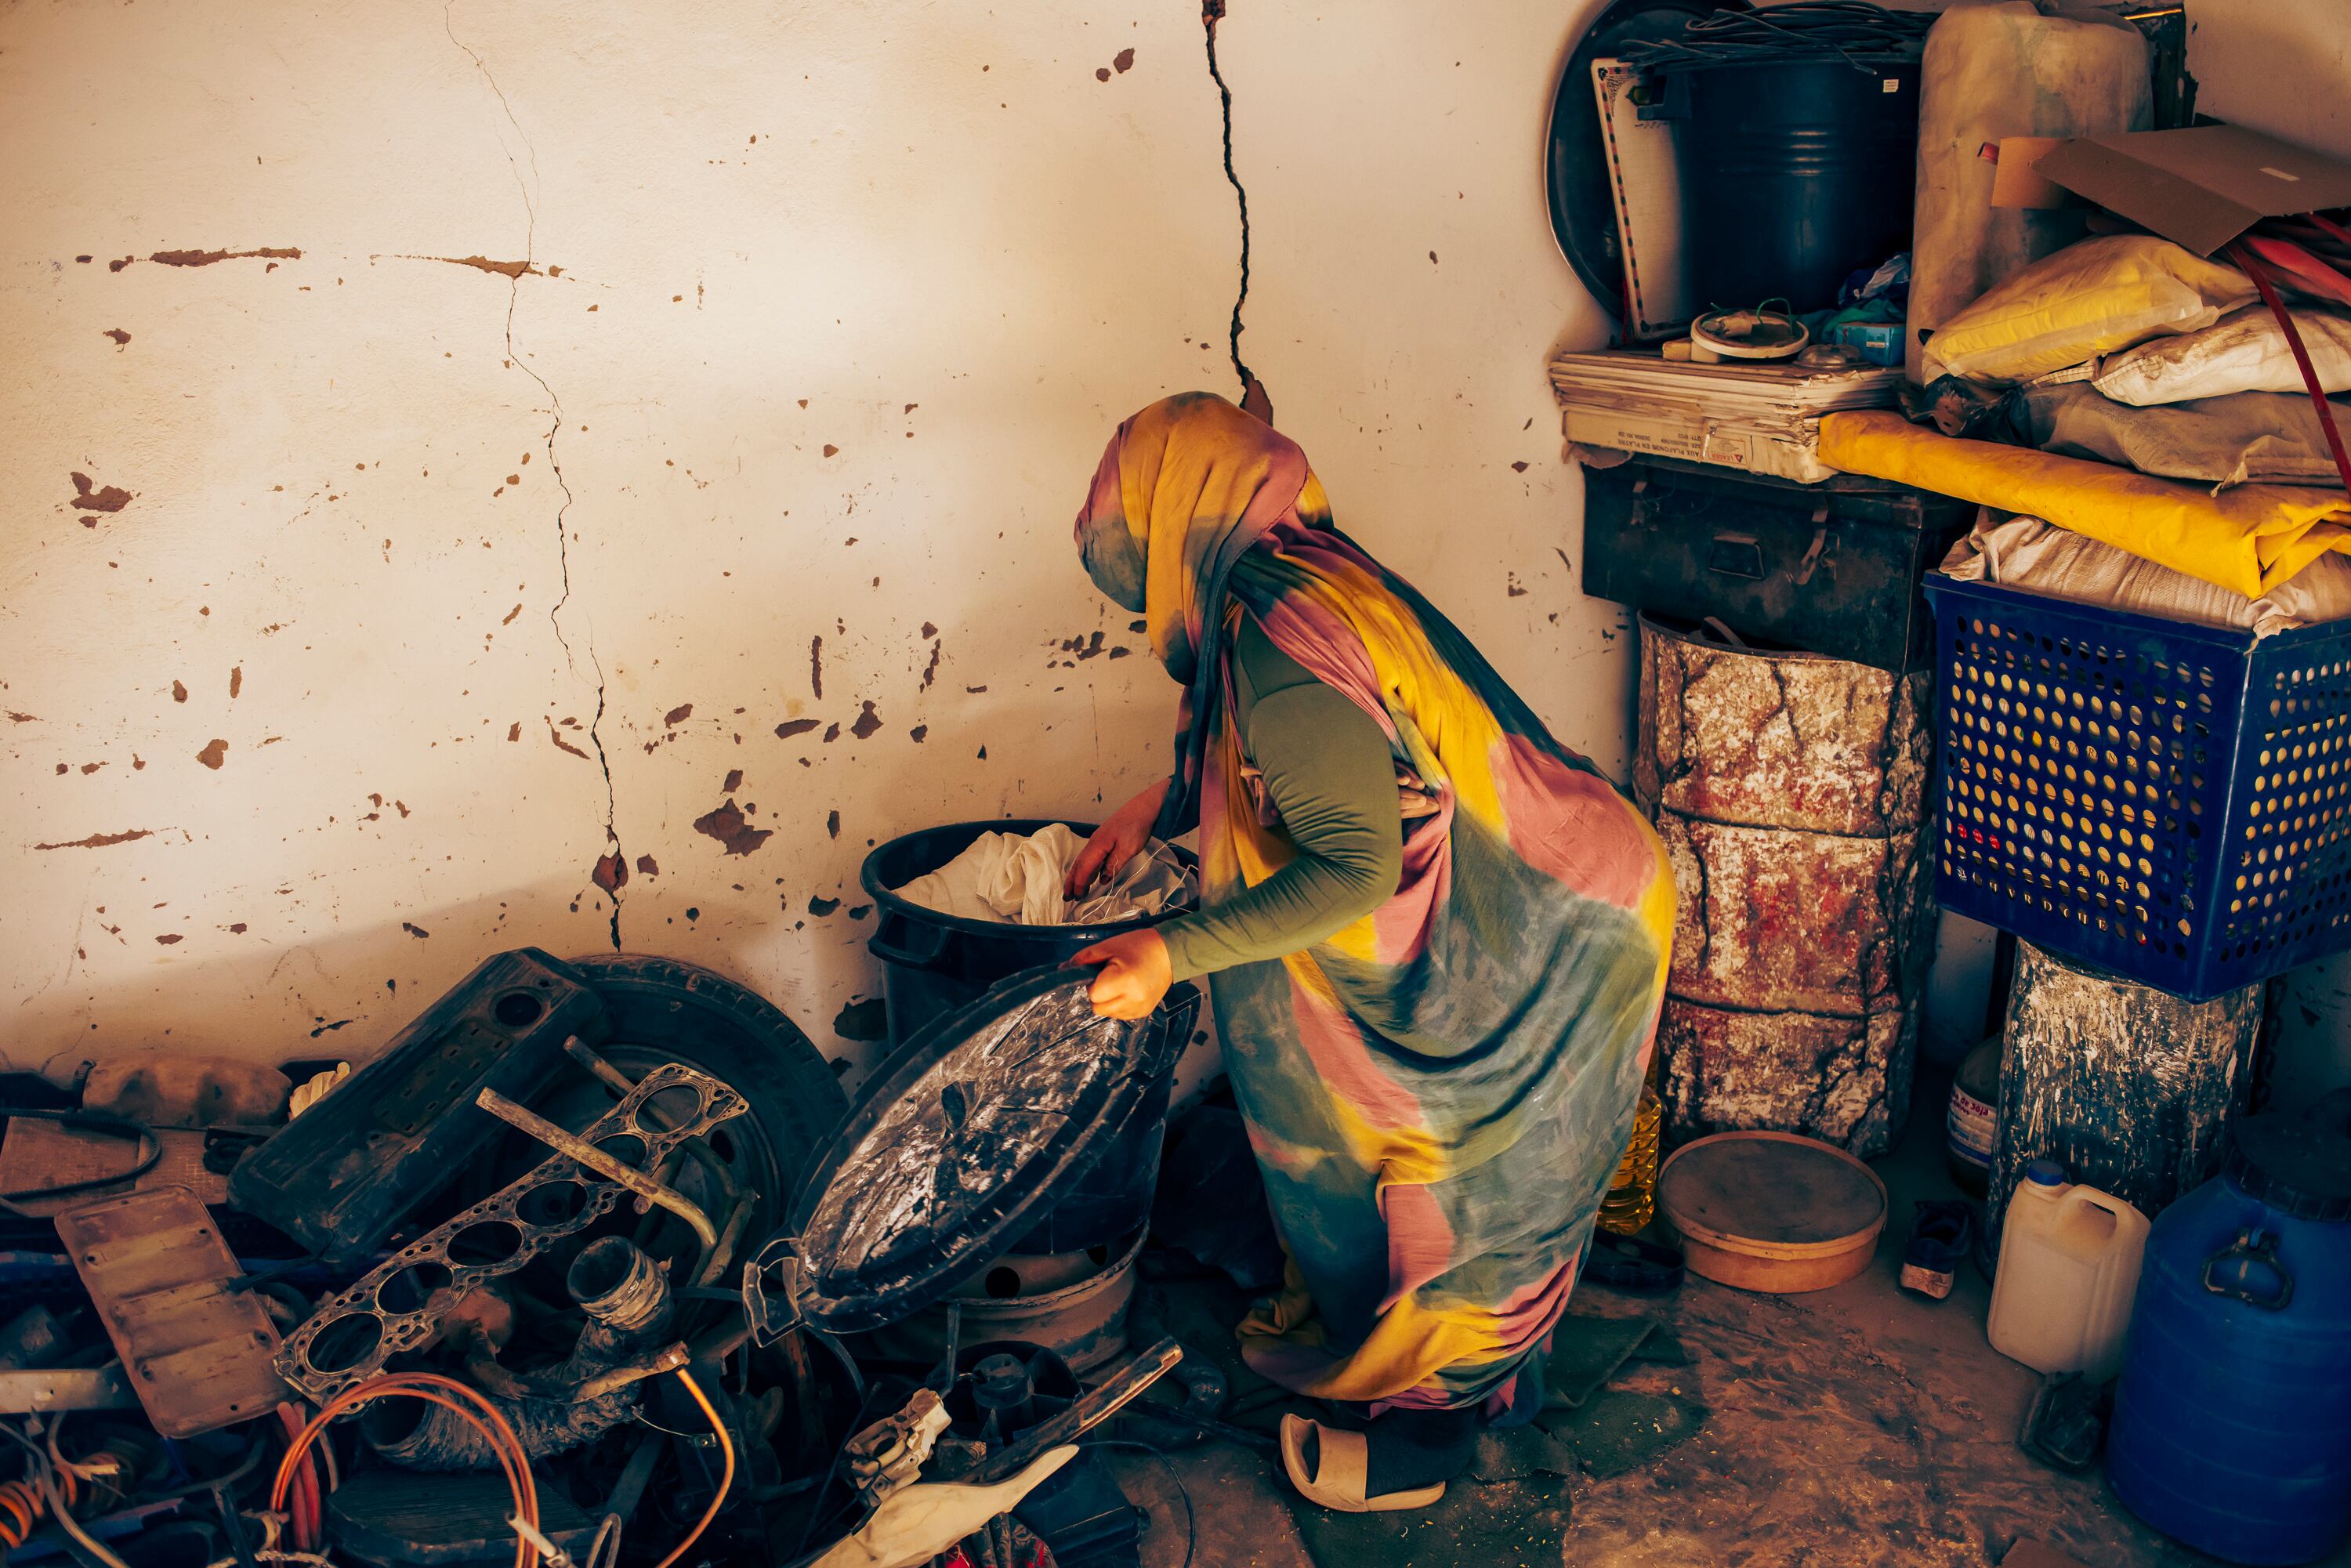 Hasina Mahfud Zadfi vive en la wilaya de Auserd, en Tinduf. Tan pronto recoge su cesta de alimentos, los almacena en una estancia de su vivienda dentro de unos bidones con tapa para que los ratones y los insectos ataquen la comida y la echen a perder. 